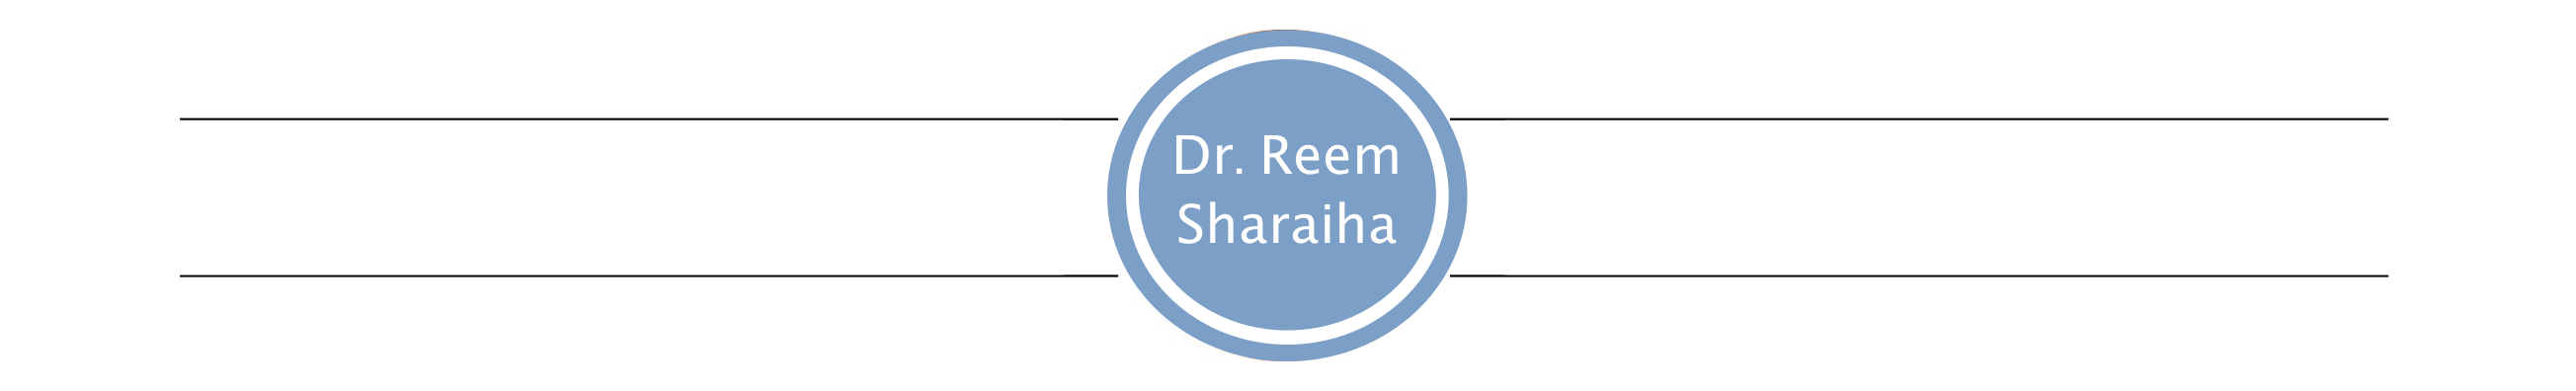 Dr. Reem Sharaiha Logo